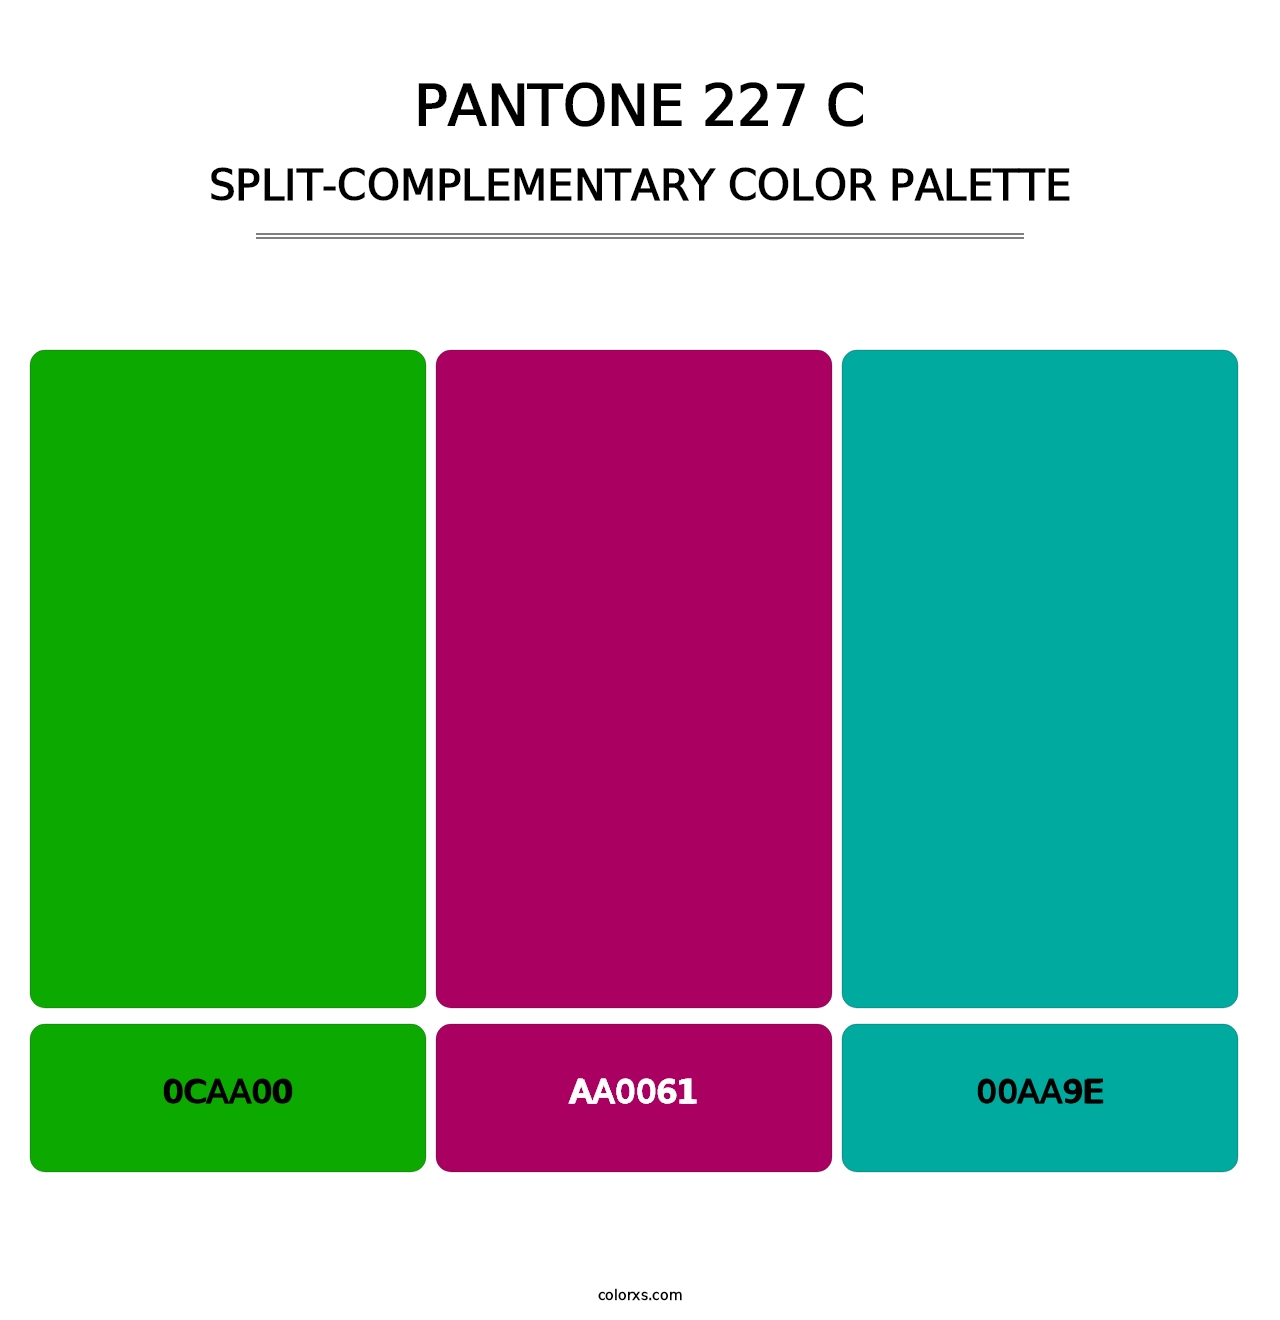 PANTONE 227 C - Split-Complementary Color Palette